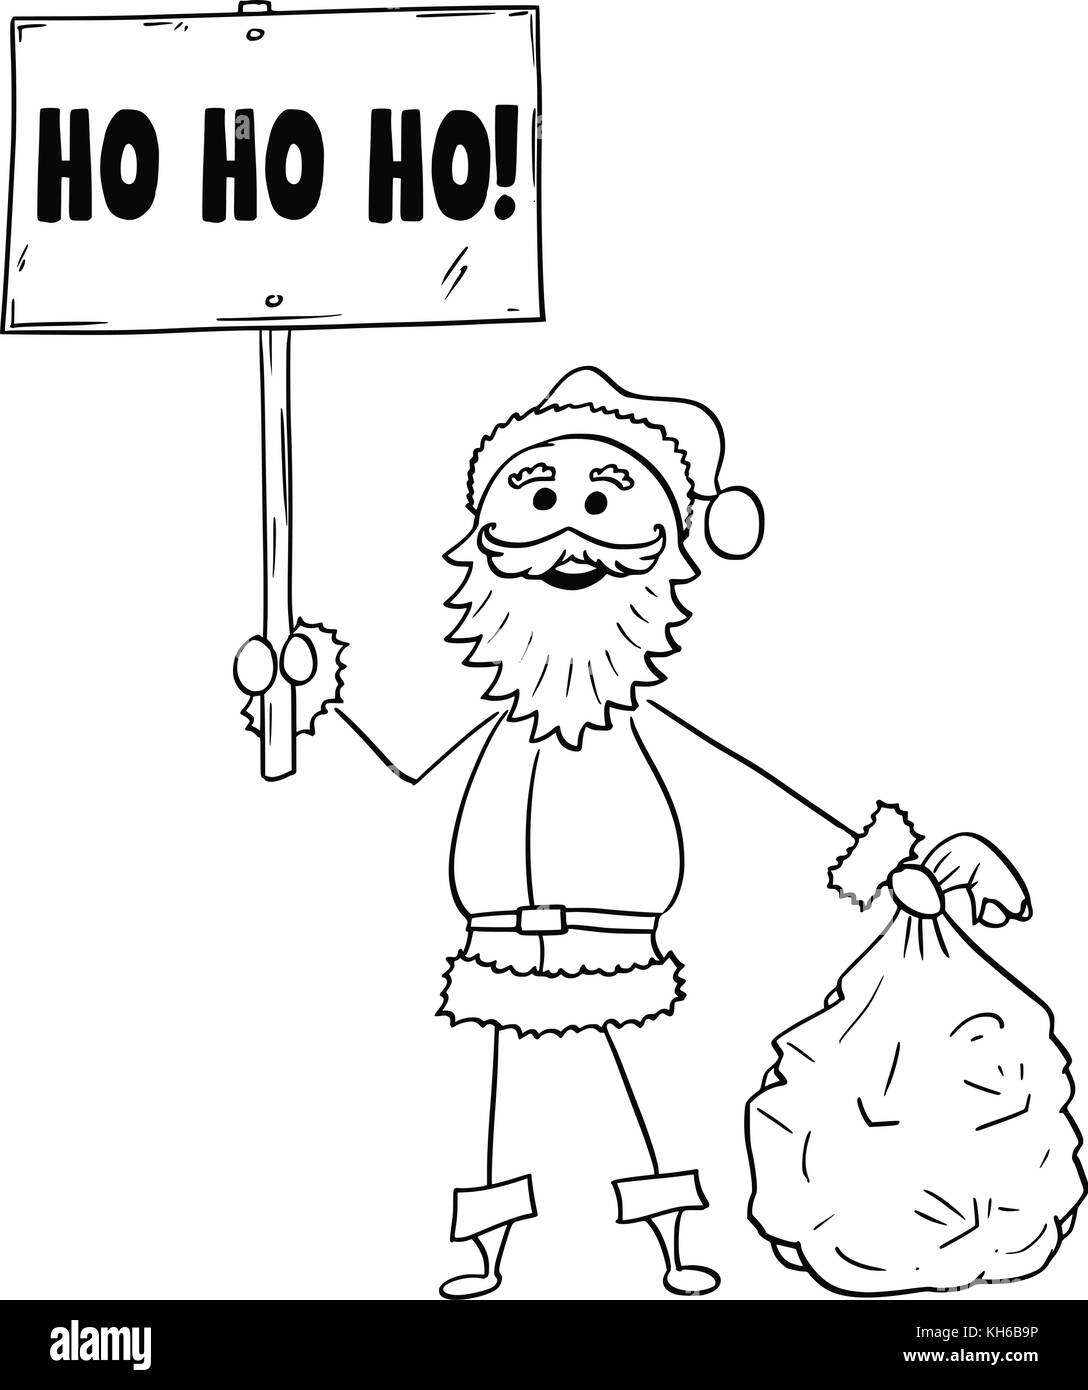 Cartoon zeichnen Abbildung: weihnachten santa claus Holding Beutel der Geschenke und Ho Ho Ho Worte unterzeichnen. Stock Vektor